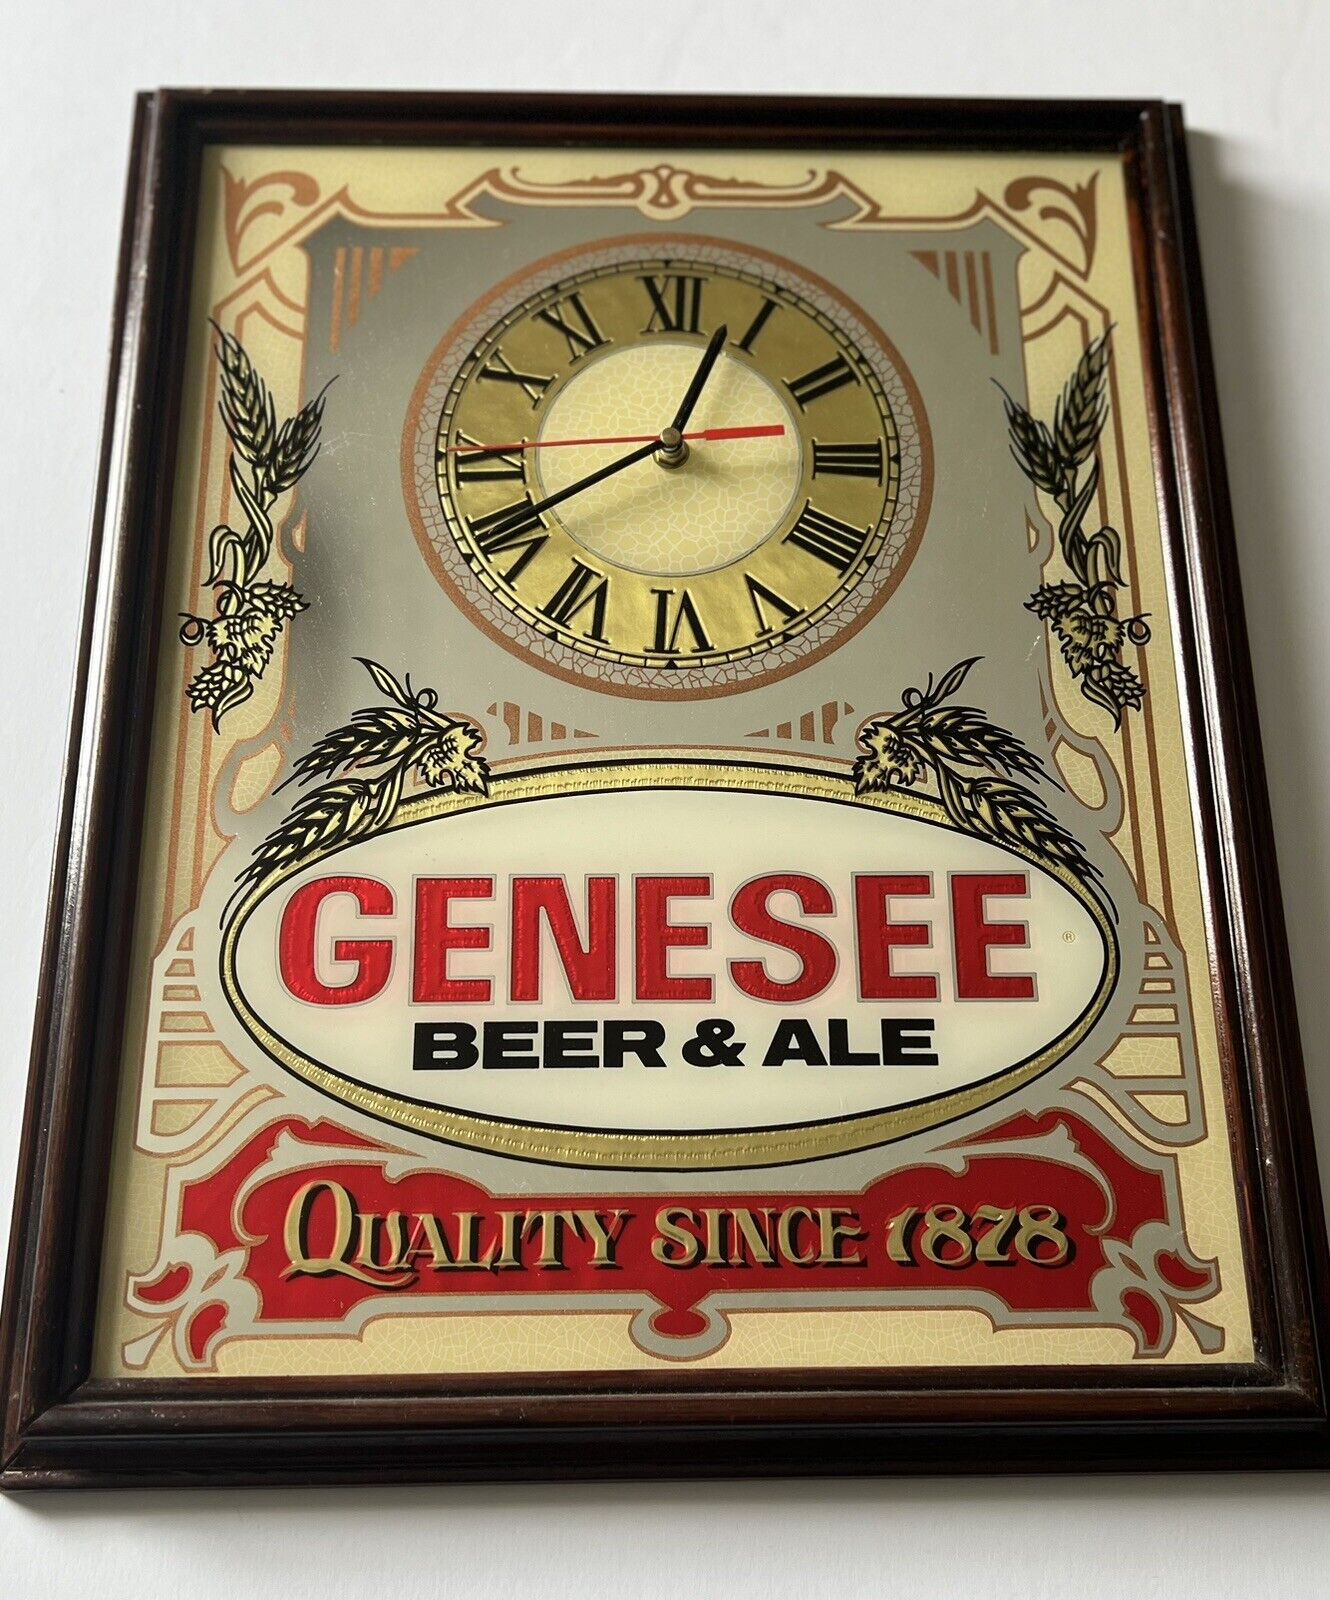 VTG Genesee Beer & Ale Quality Since 1878 Hanging Beer Mirror Advertising Clock